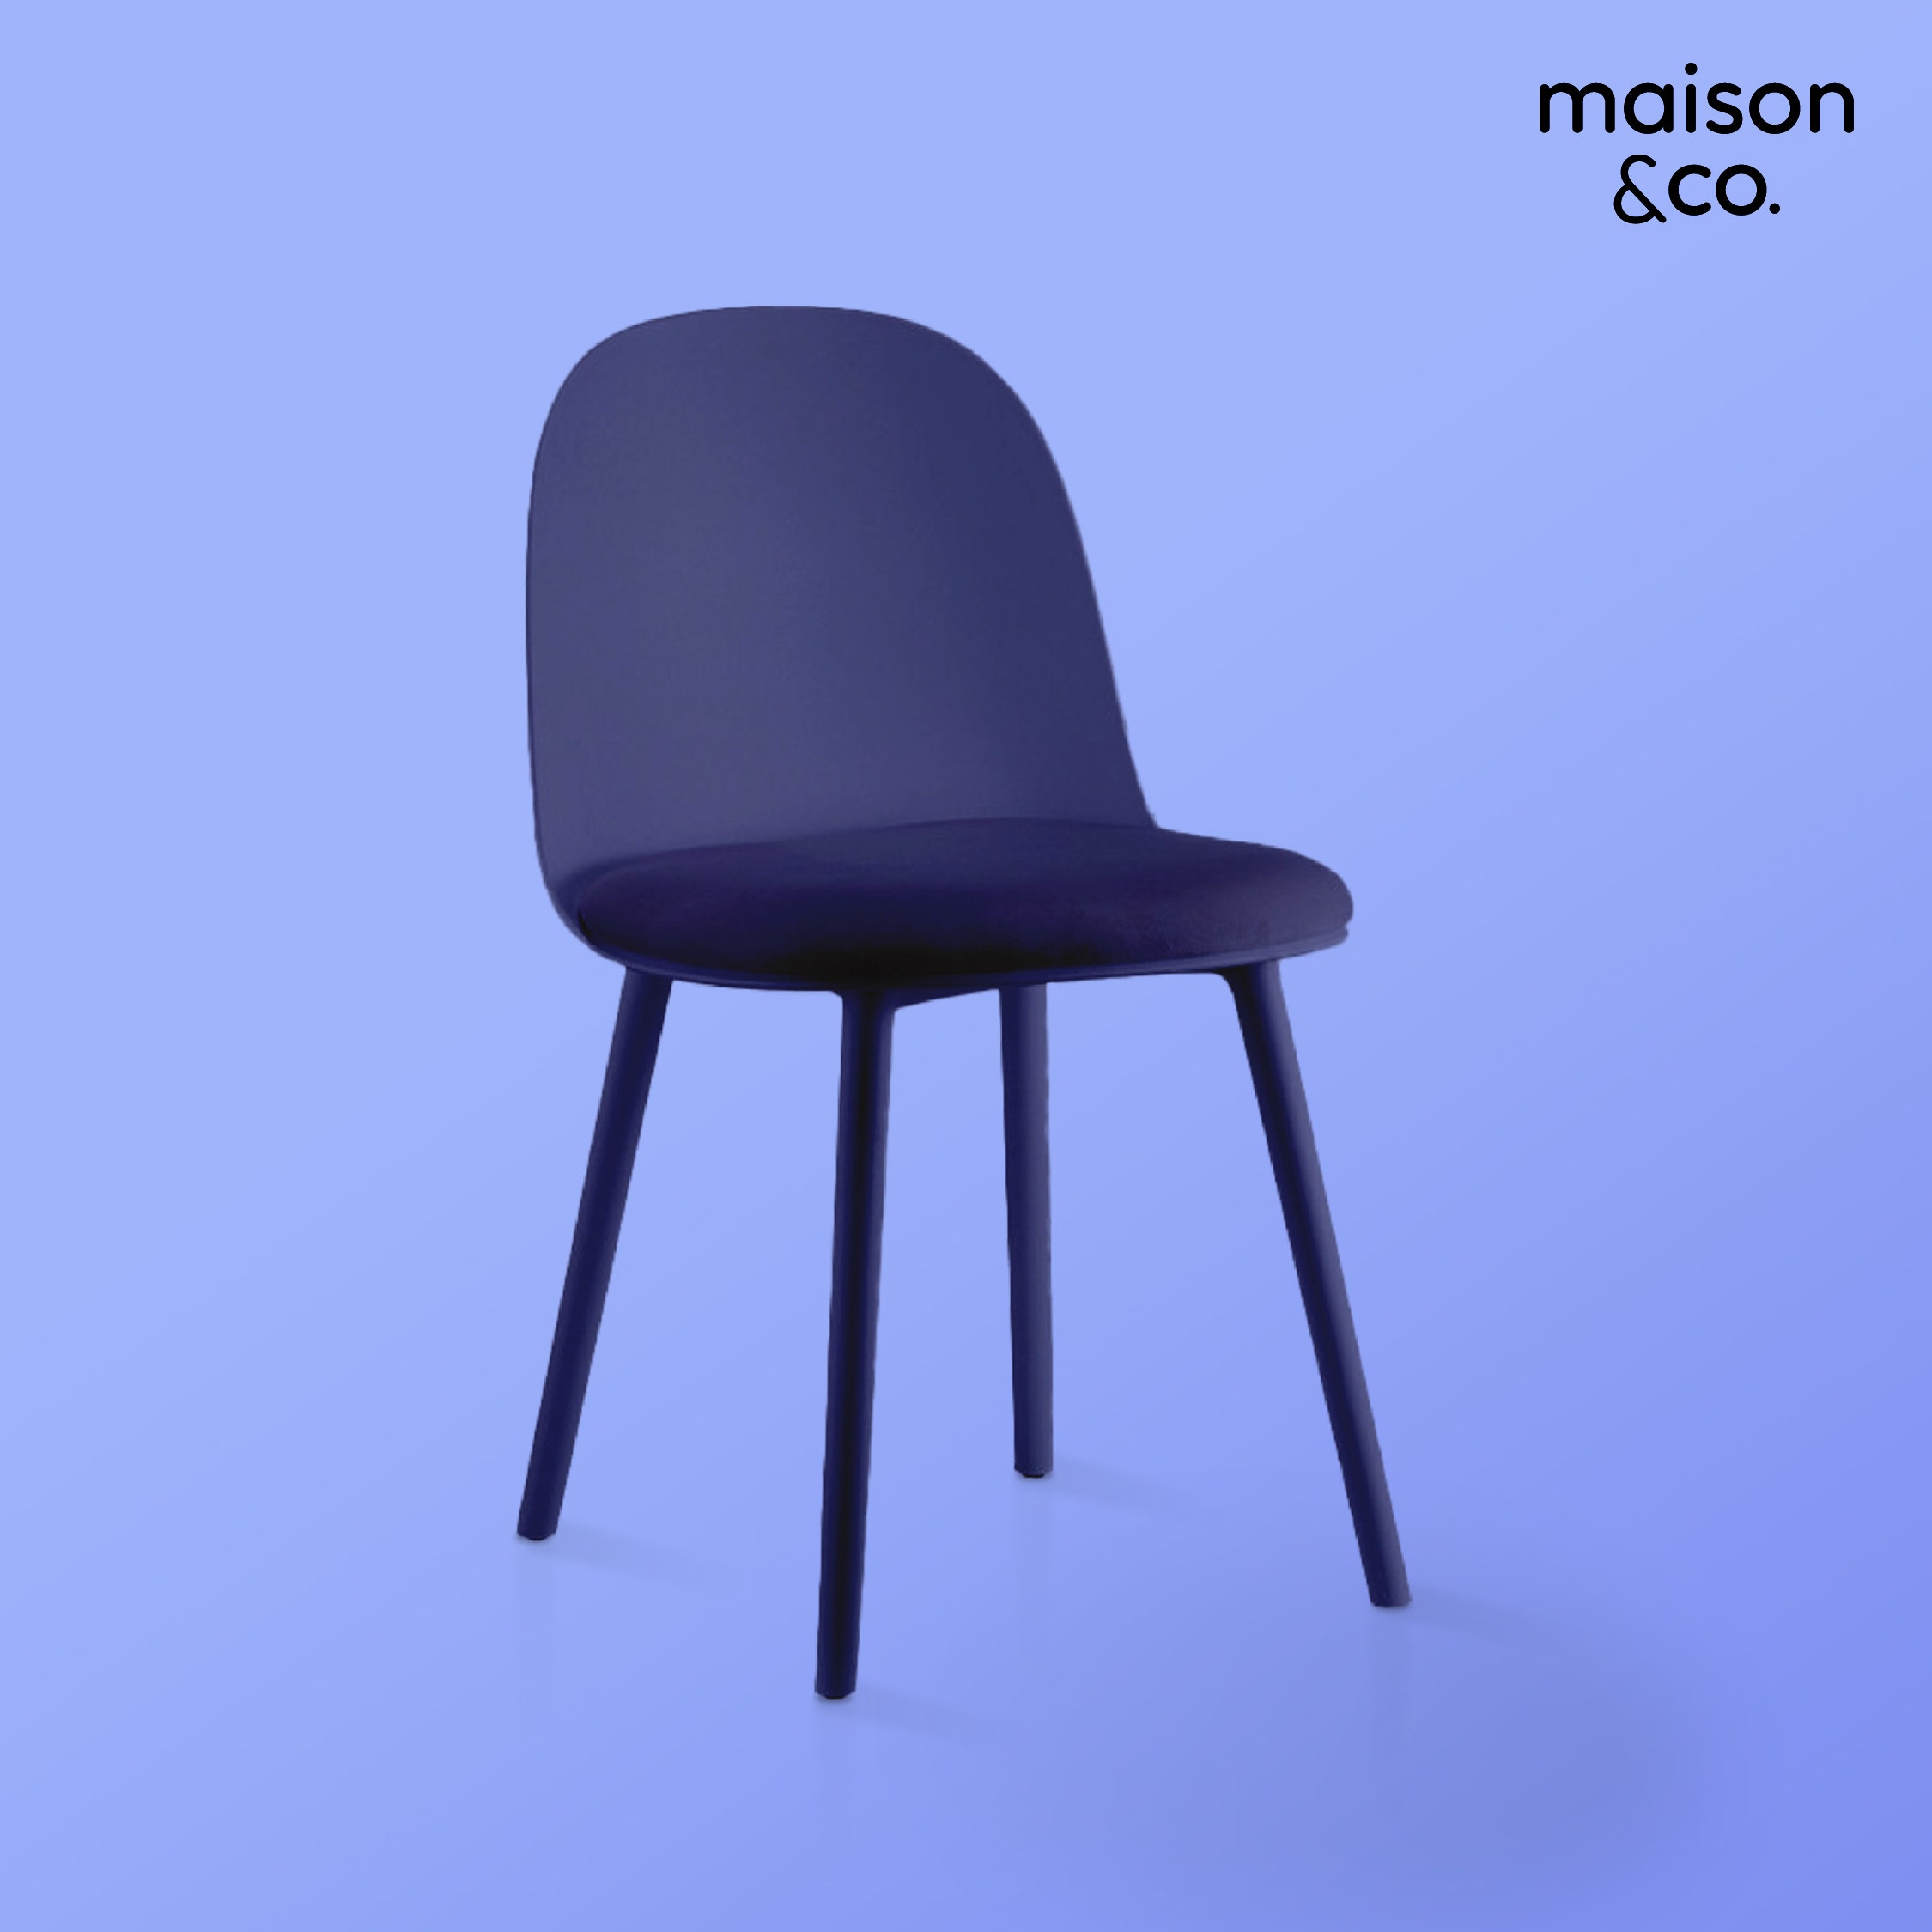 เก้าอี้YOOKO เบาะผ้าสีน้ำเงิน01